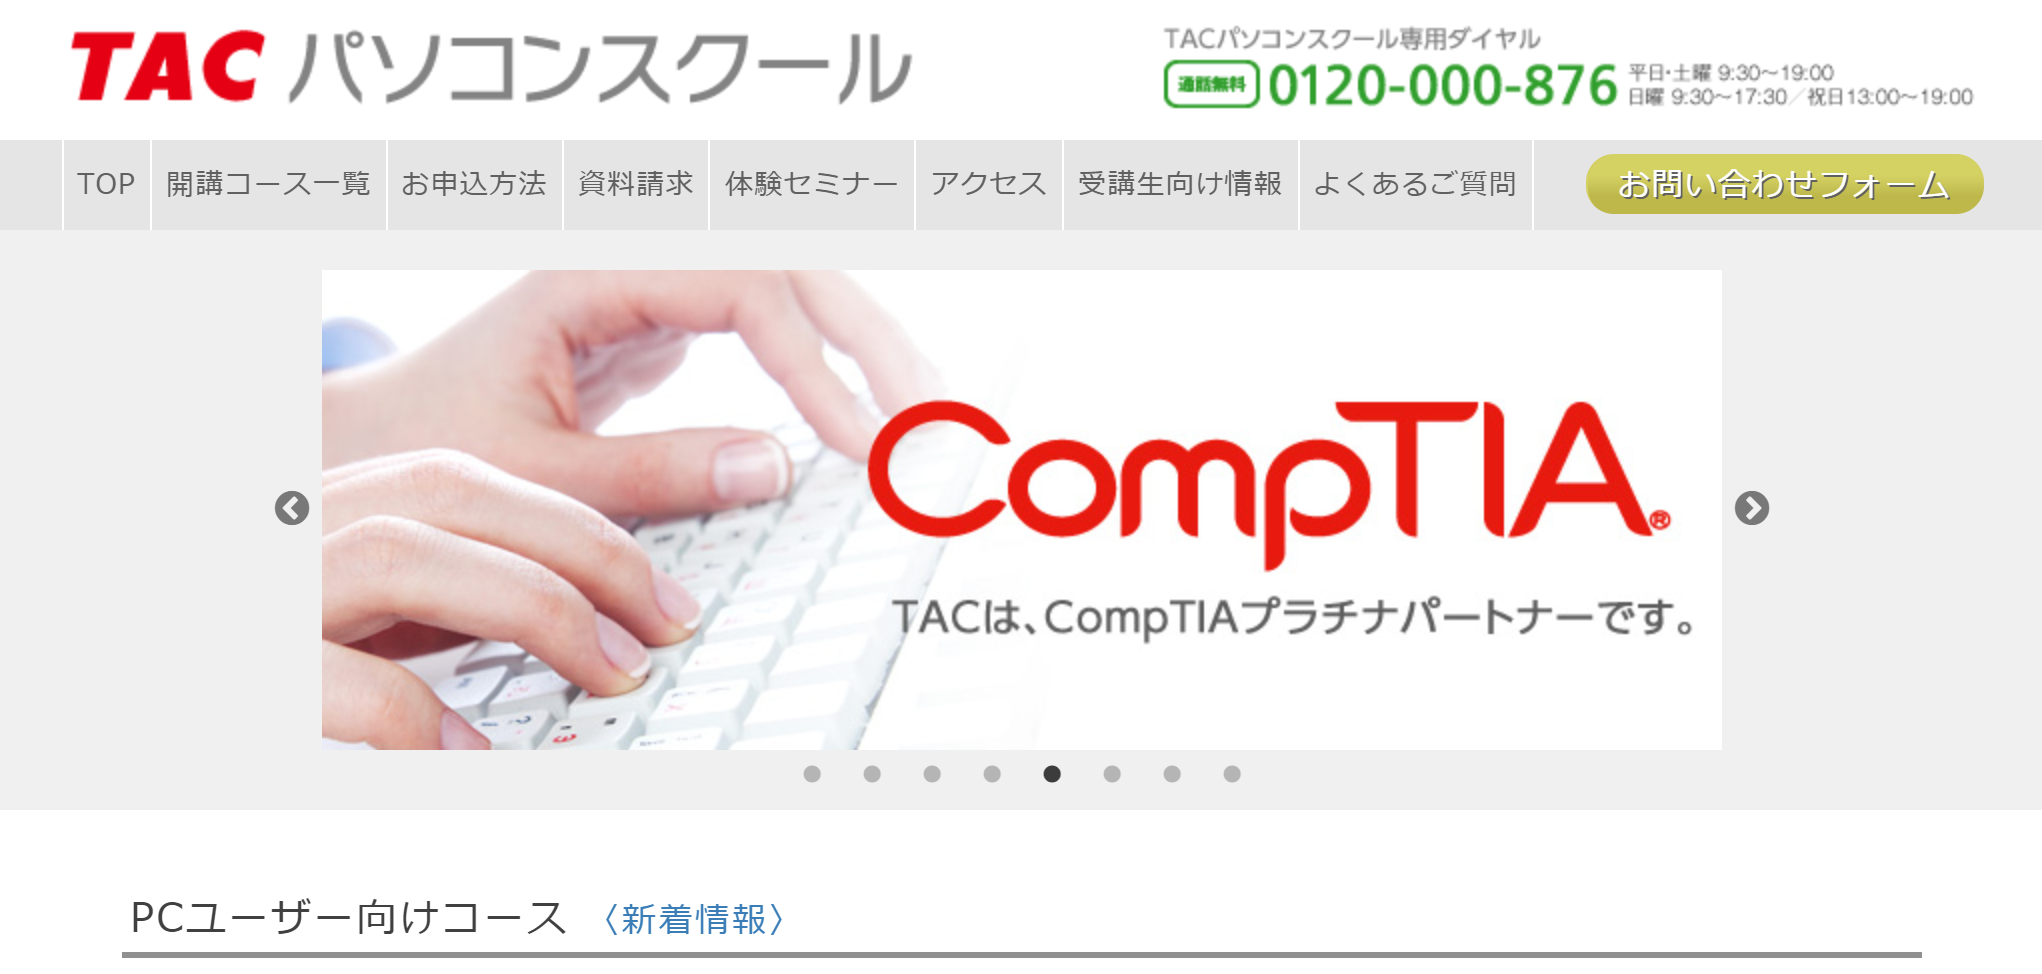 TACパソコンスクール